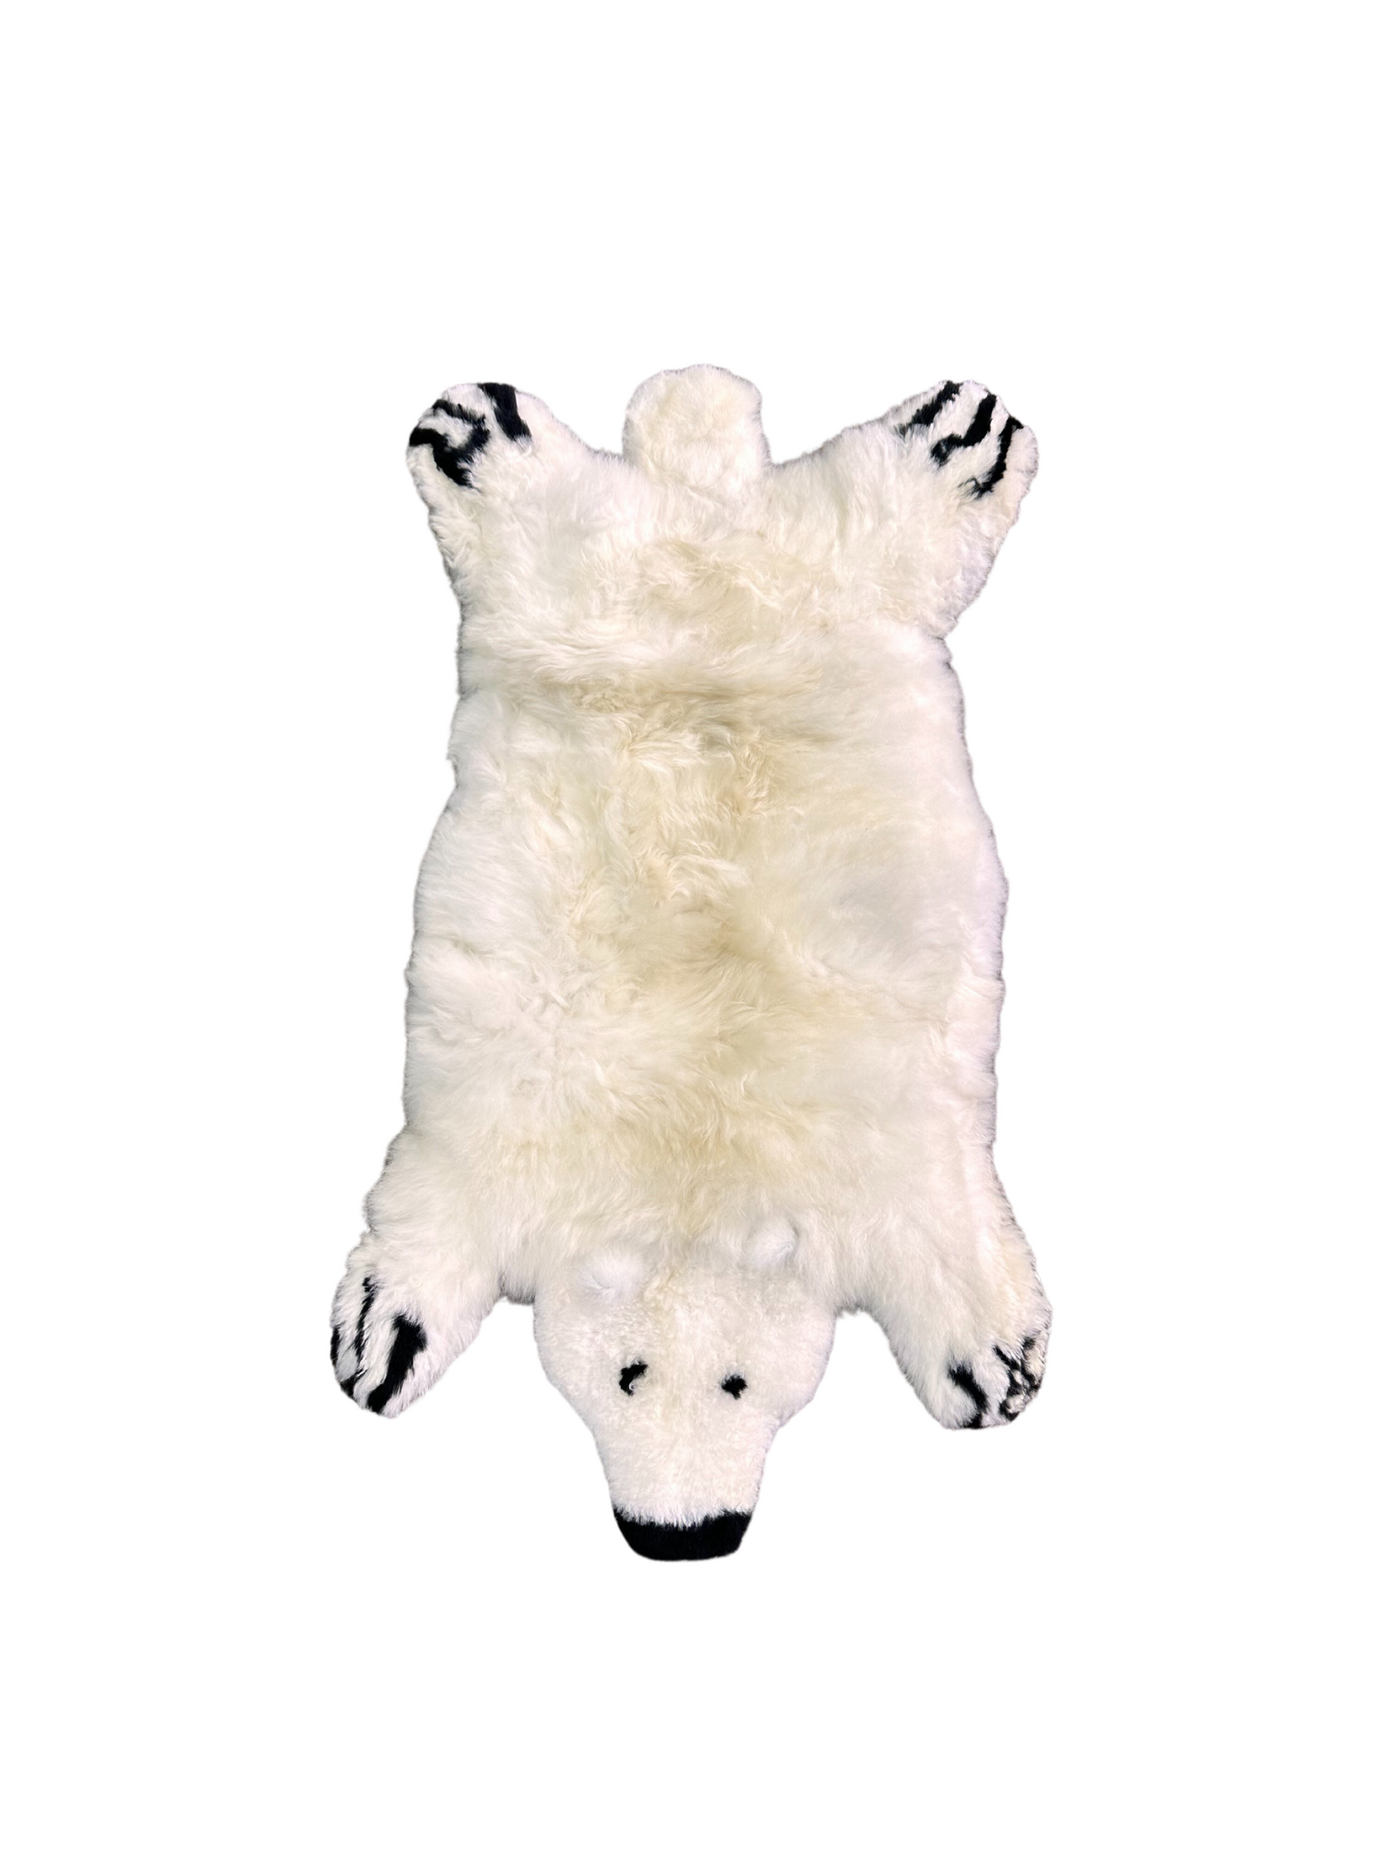 Polar Bear Children's Rug